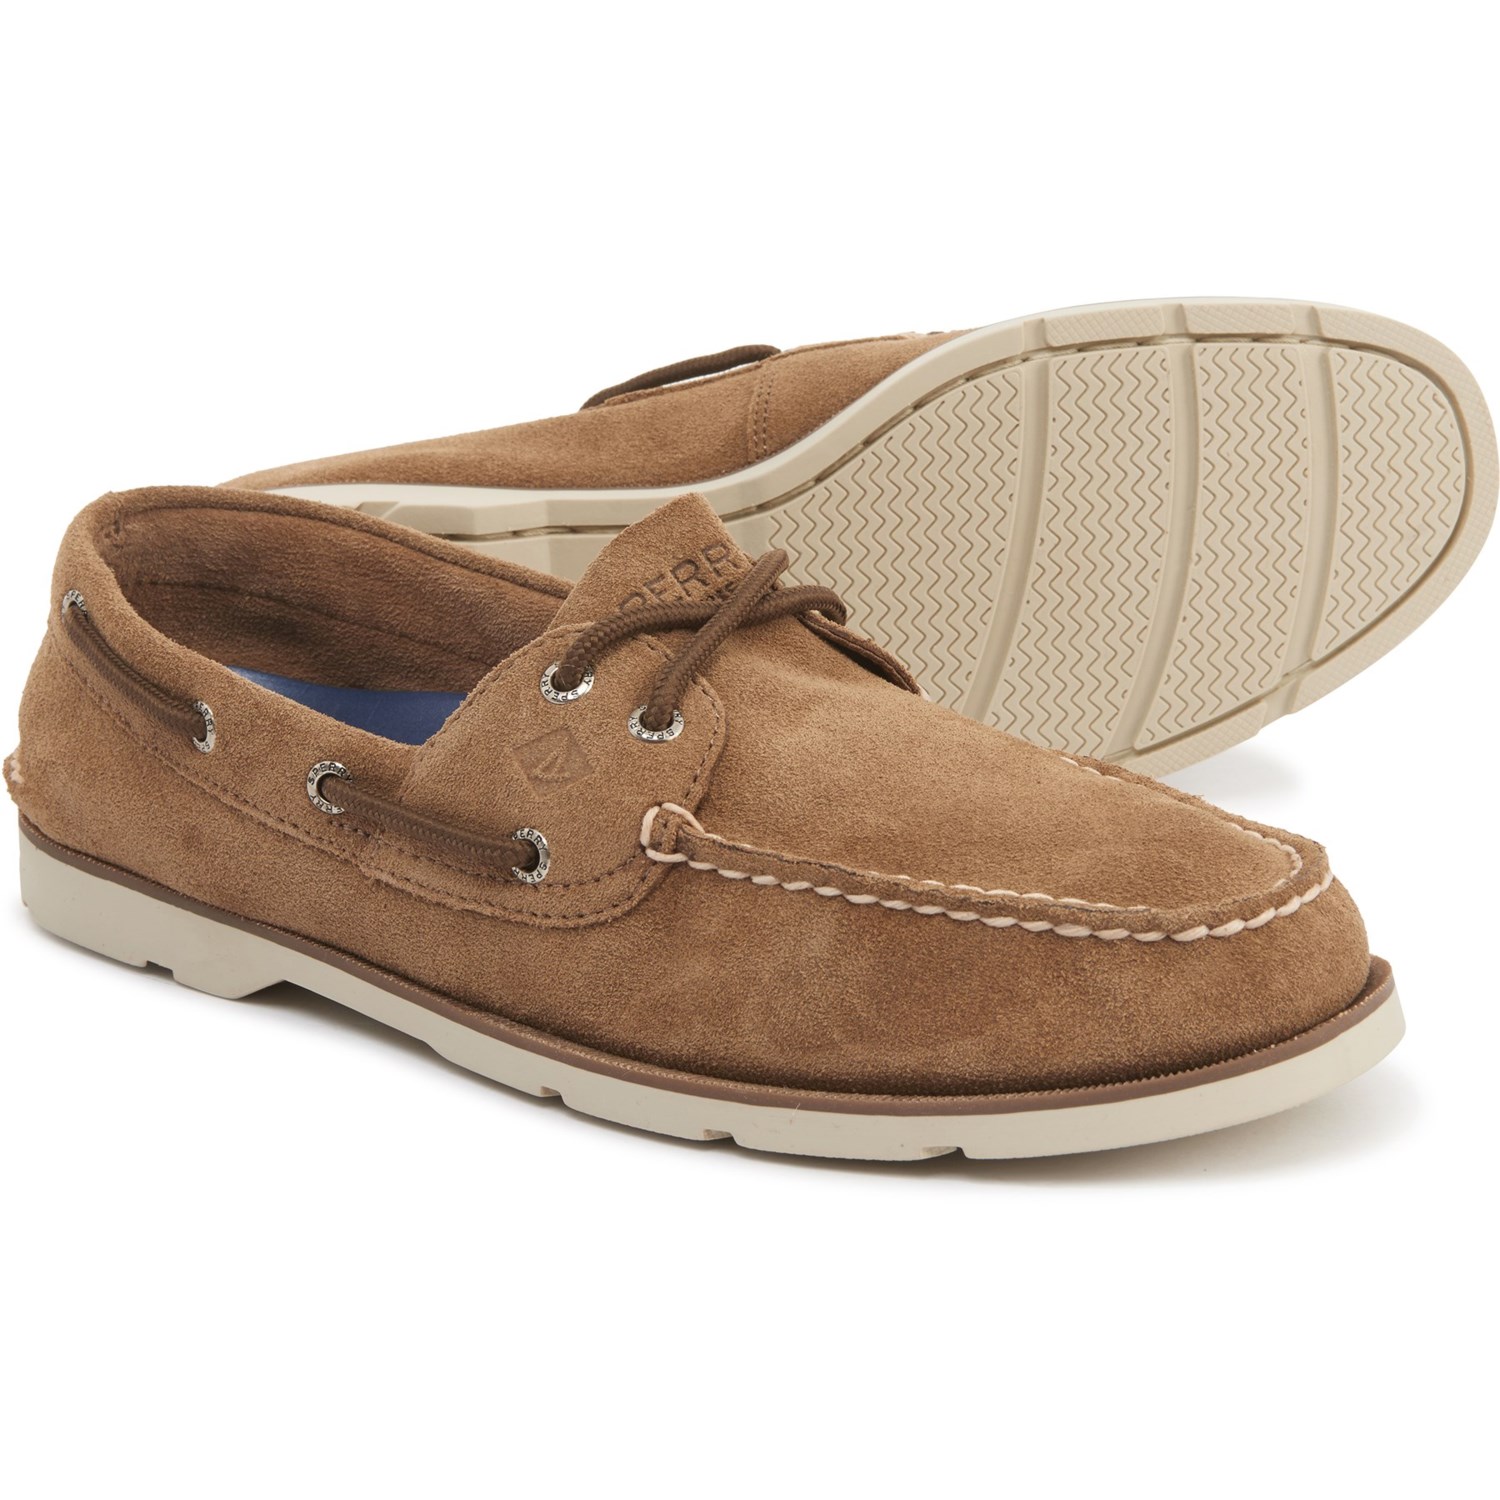 Sperry Tan Leeward 2-Eye Boat Shoes (For Men)